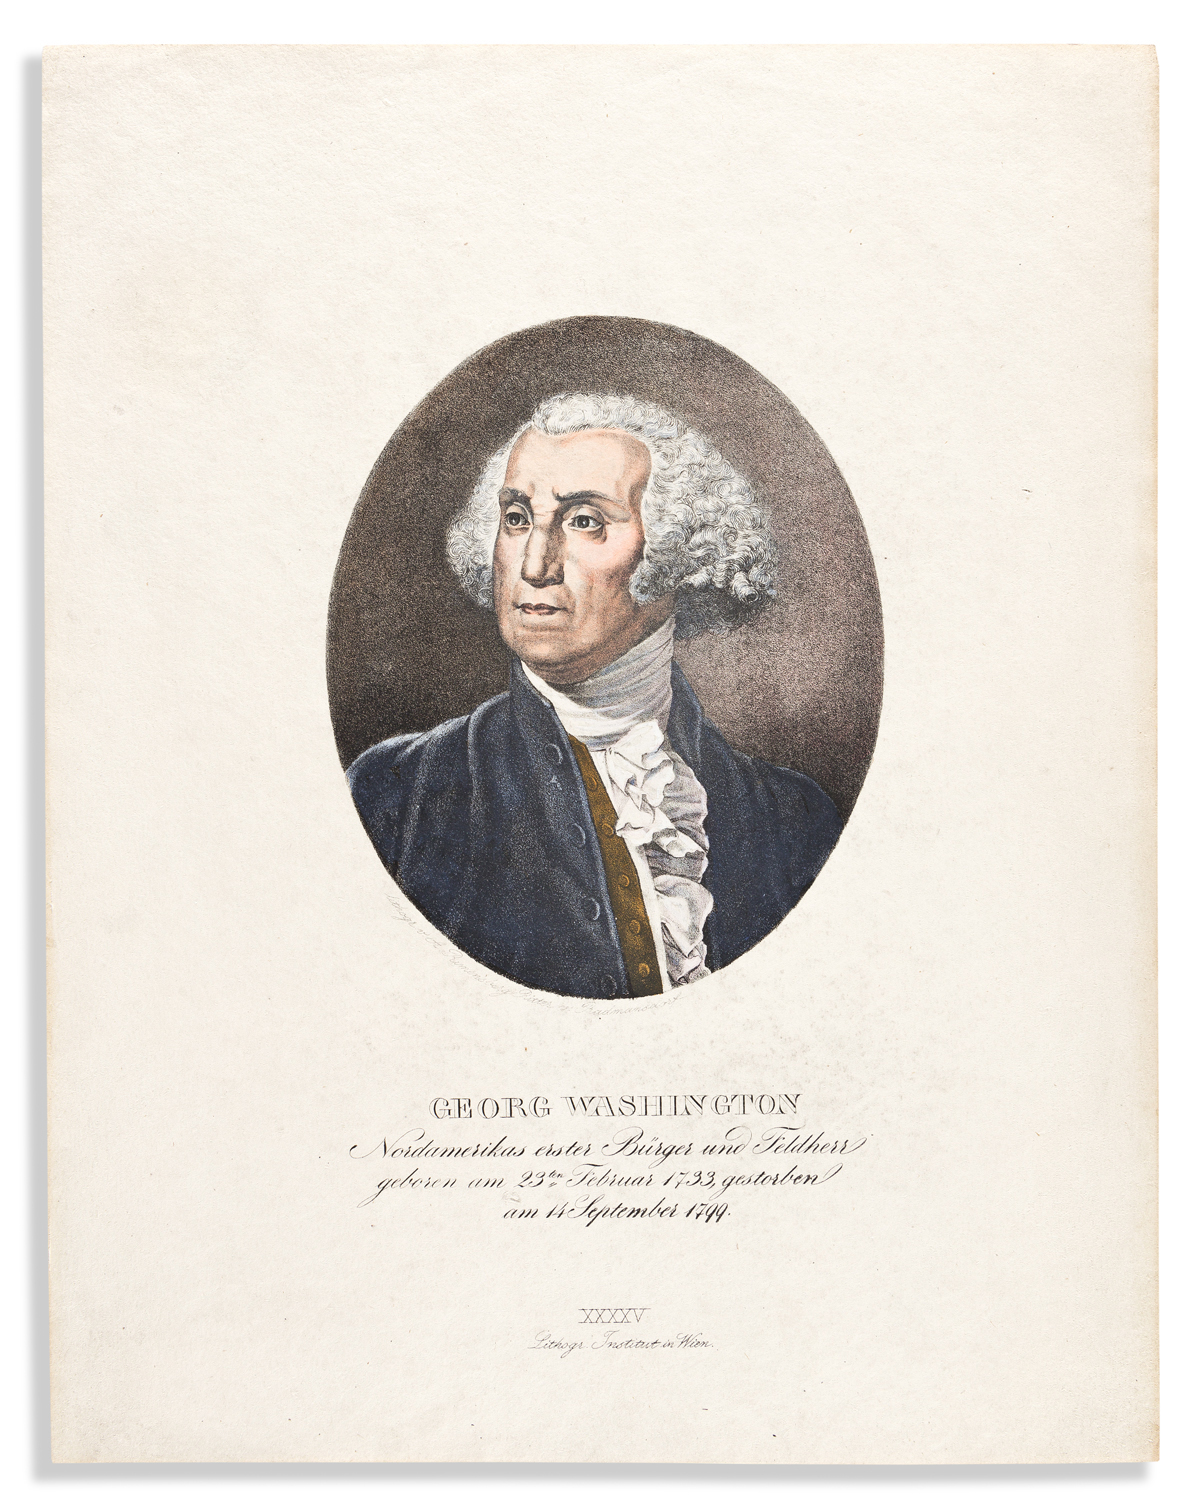 (WASHINGTON.) Albert Rimensberg Ritter von Radmansdorf. Georg Washington, Nordamerikas erster Bürger und Feldherr.